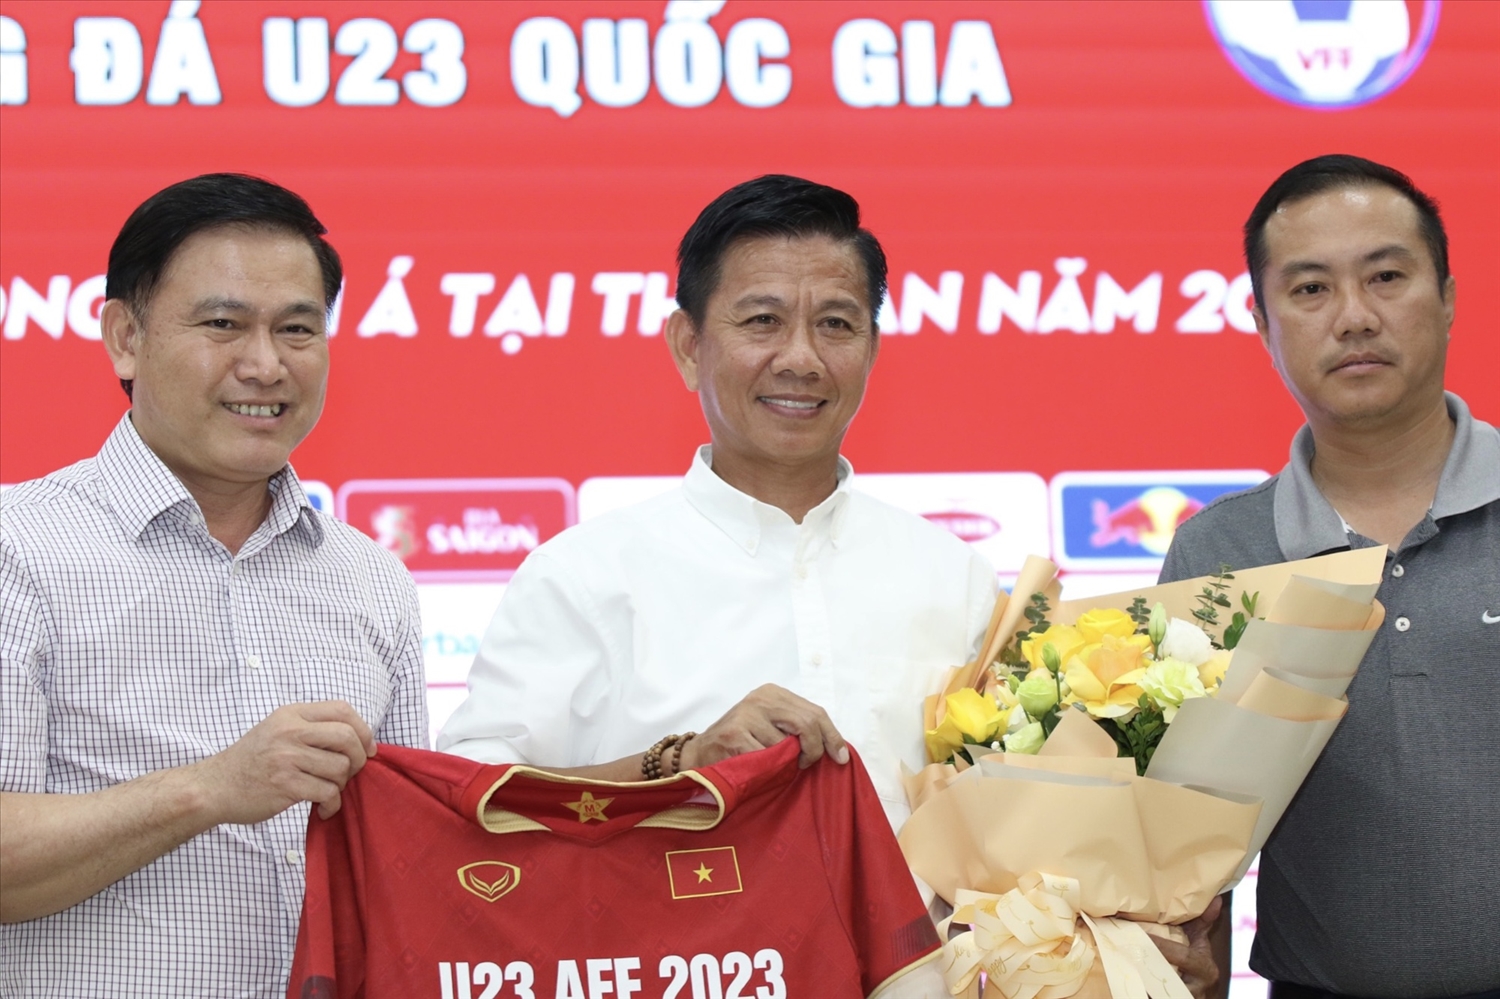 HLV Hoàng Anh Tuấn chính thức nhận nhiệm vụ dẫn dắt đội tuyển U23 Việt Nam (Ảnh IT)